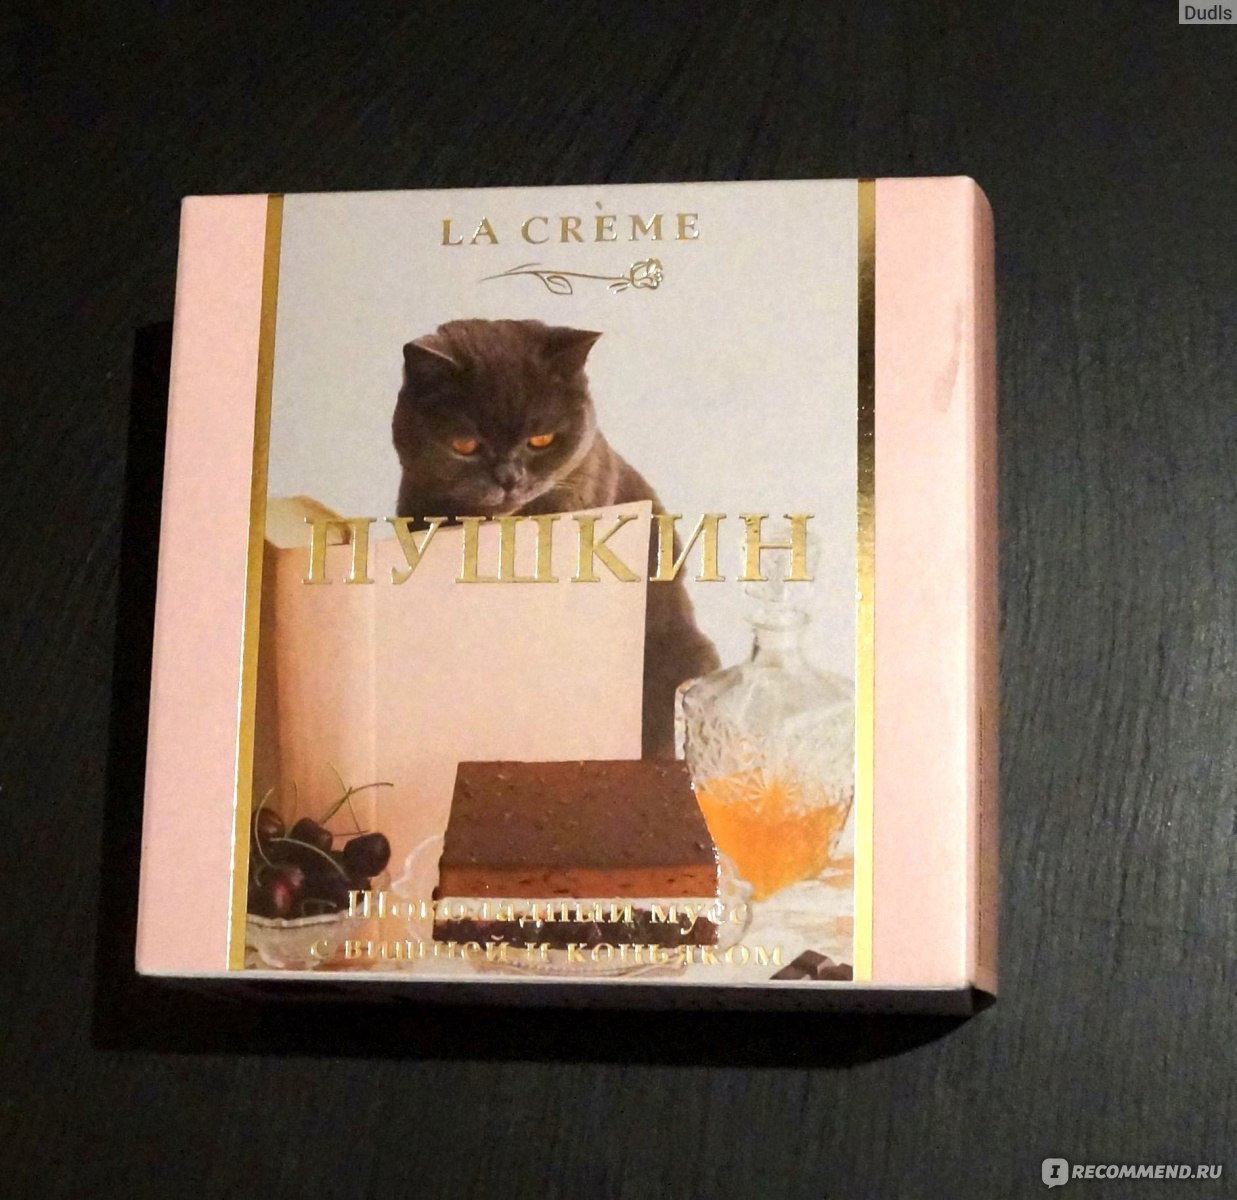 Торт ООО "Ла крем" La creme "Пушкин" Шоколадный мусс с вишней и коньяком  фото